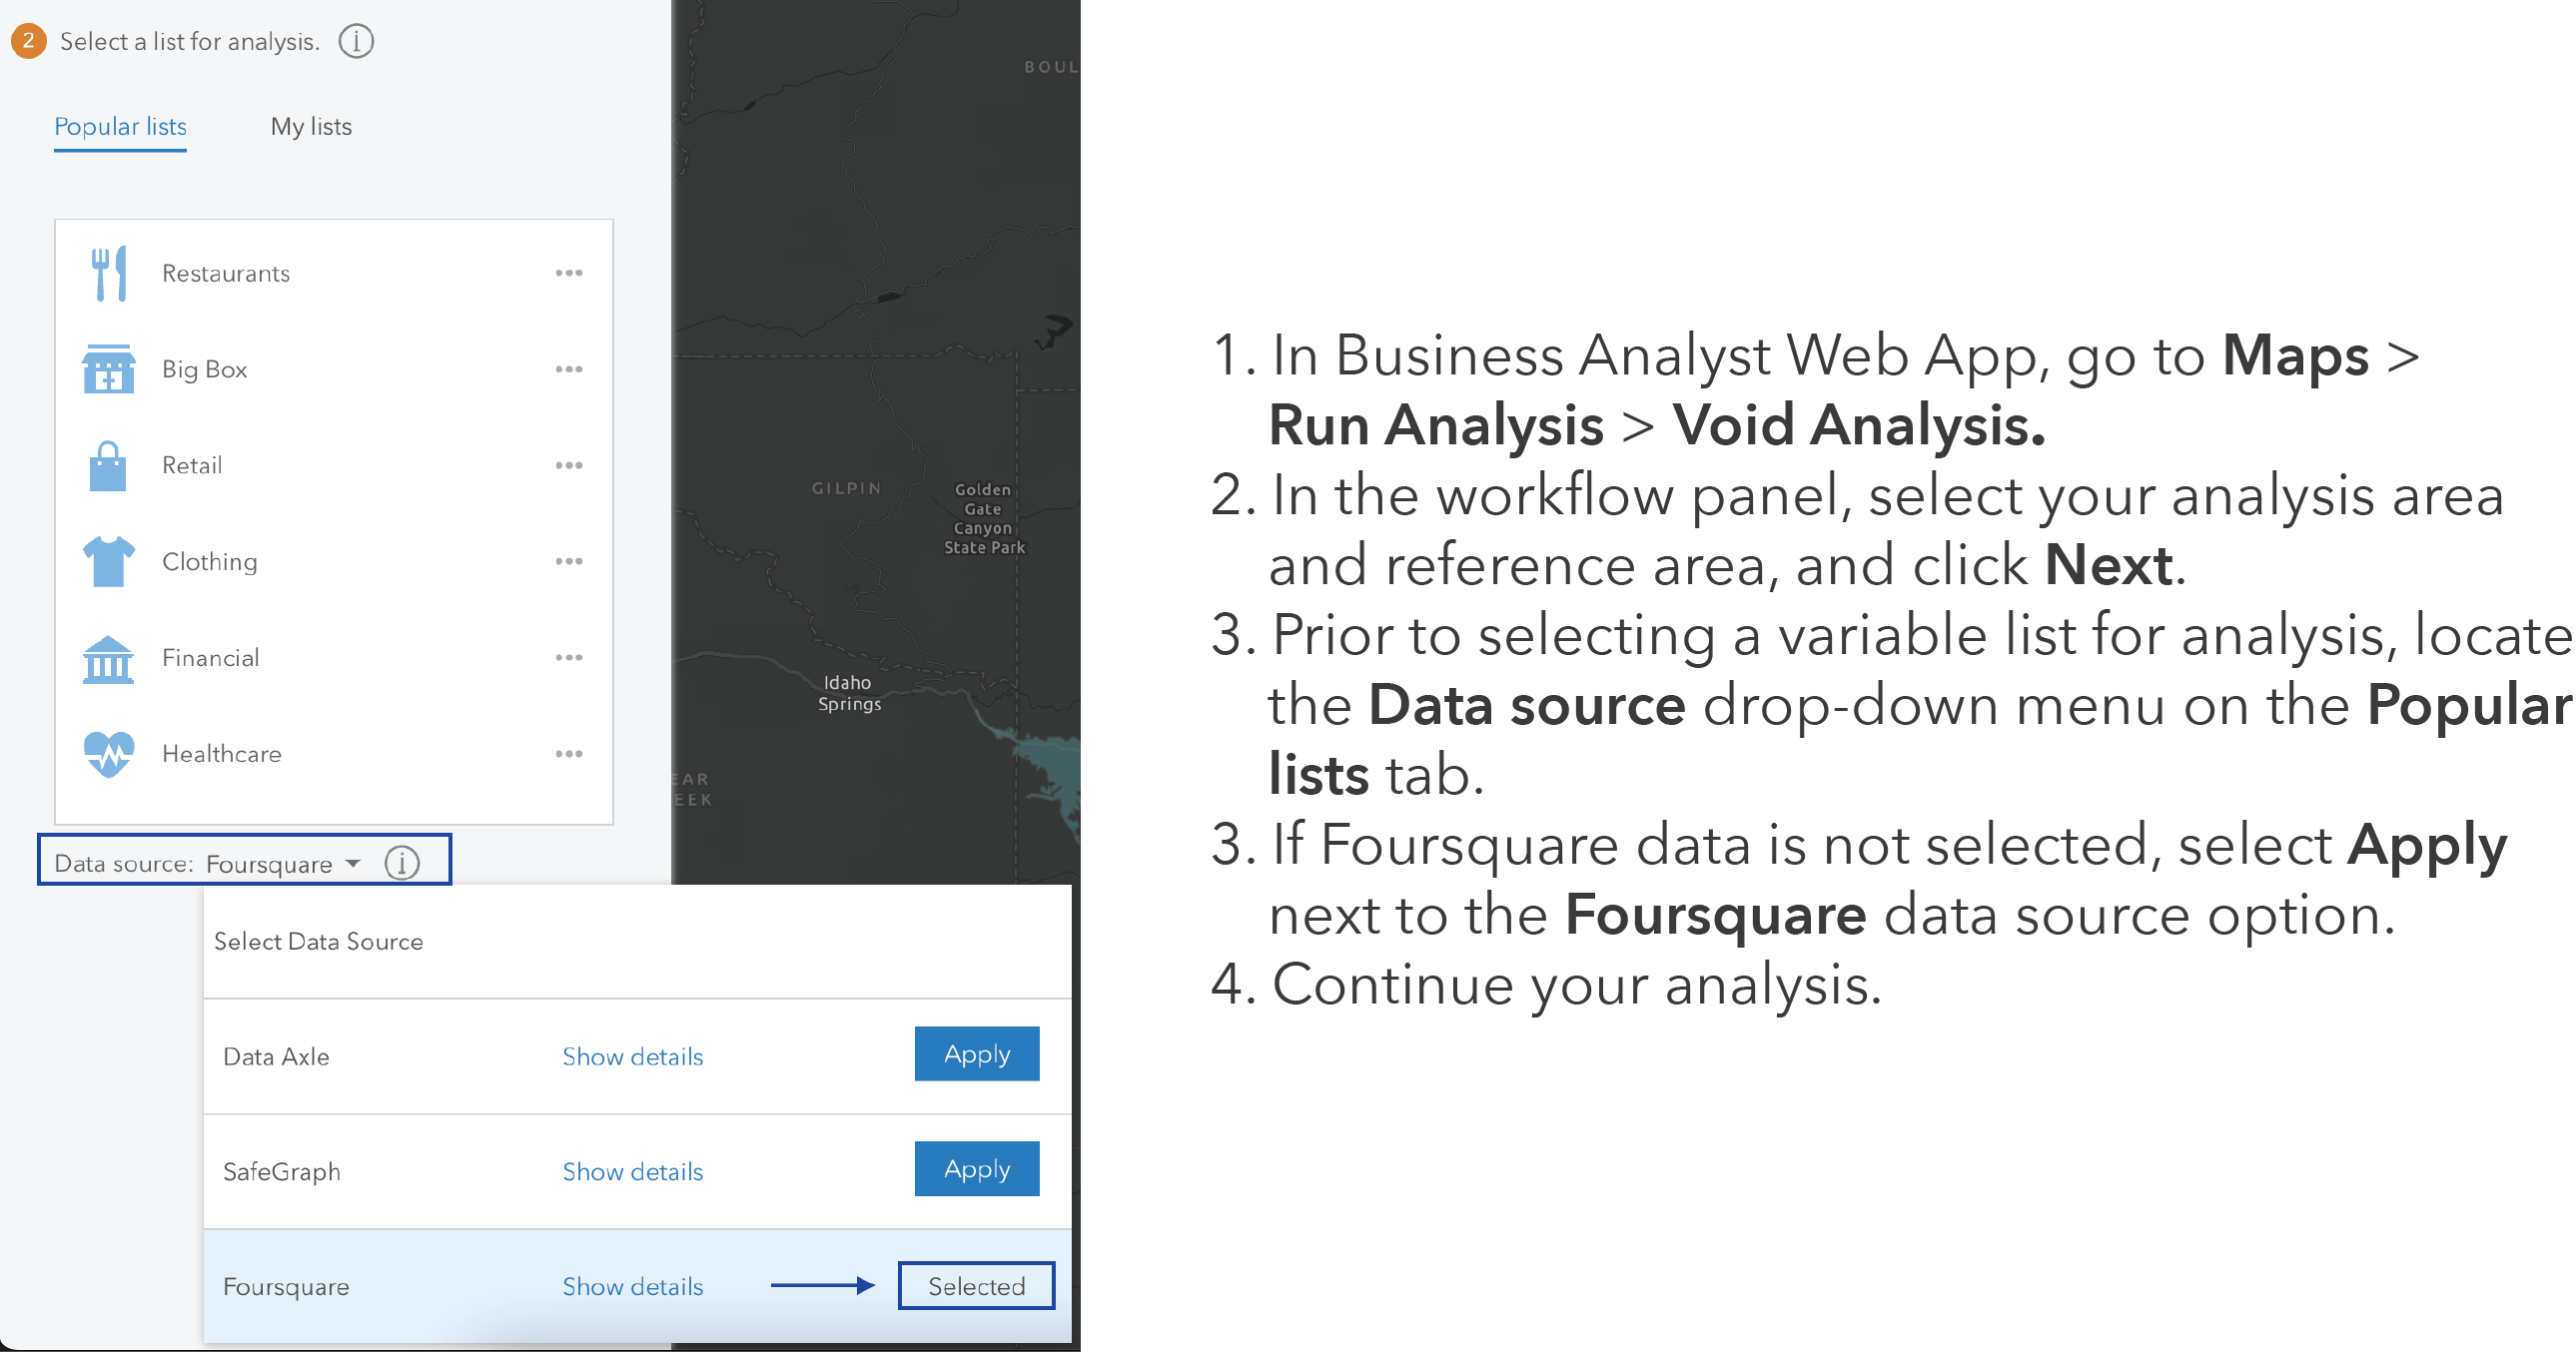 POI - Void analysis workflow